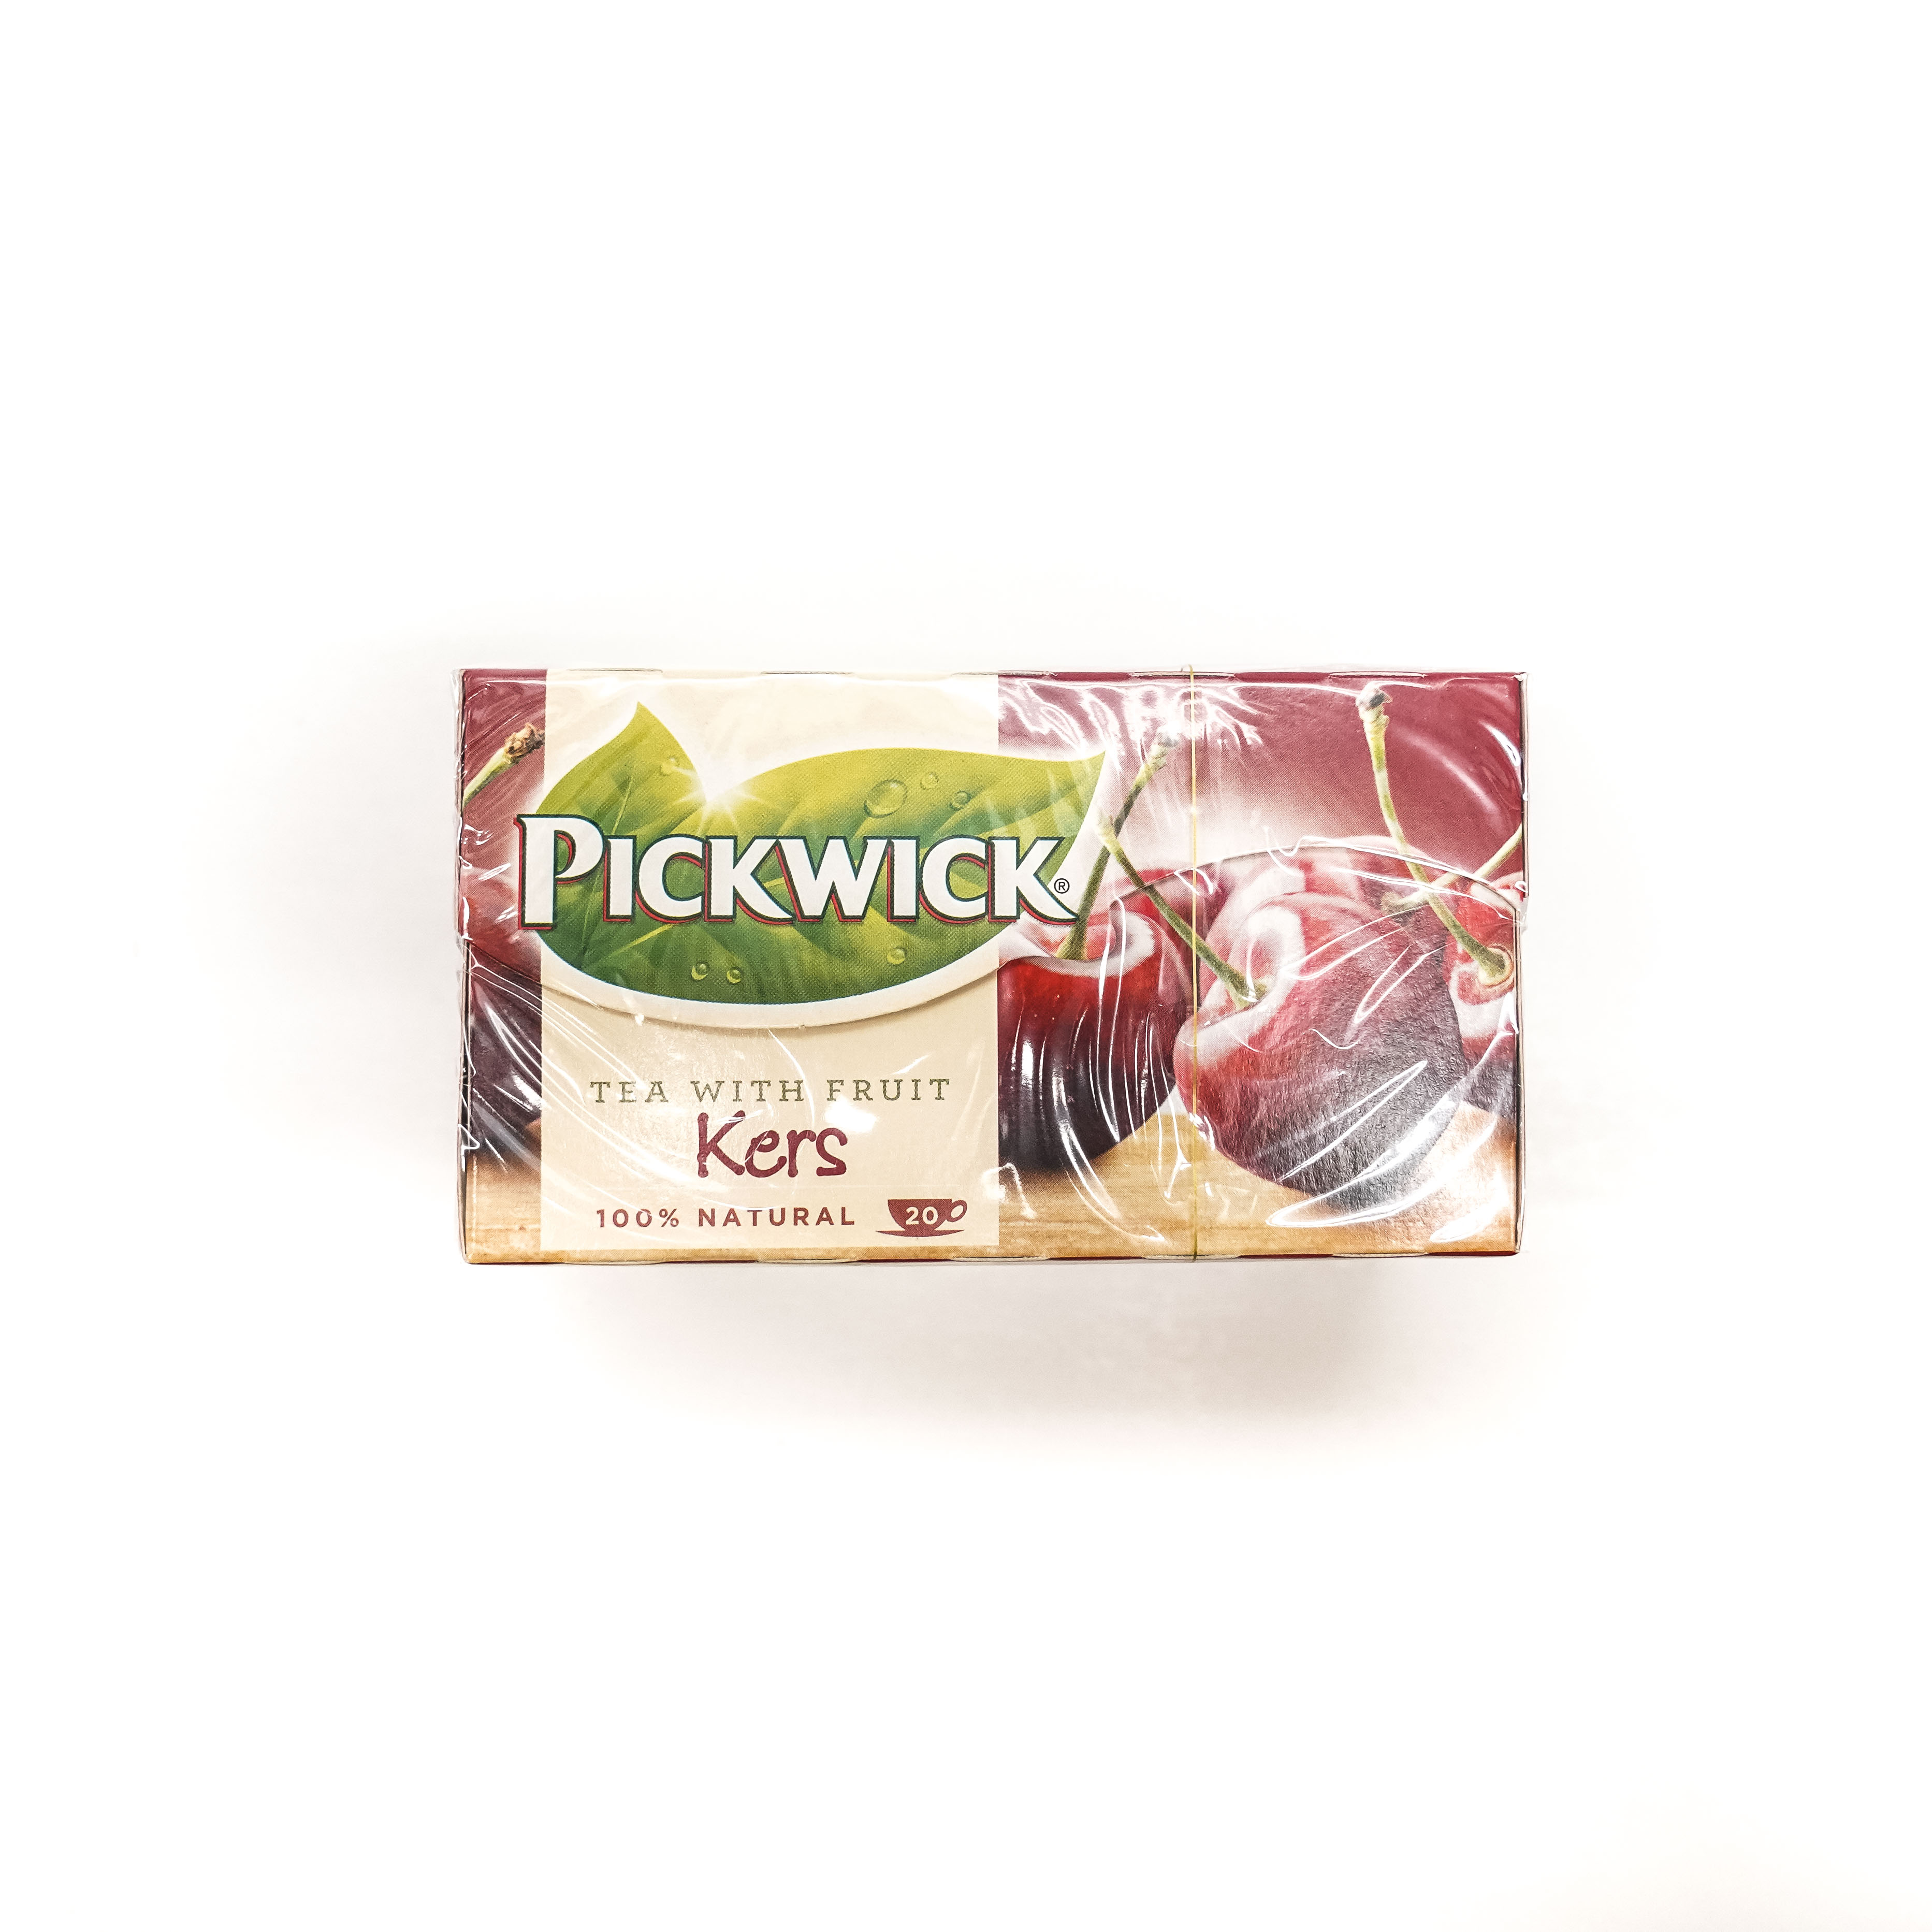 Pickwick Cherry Tea